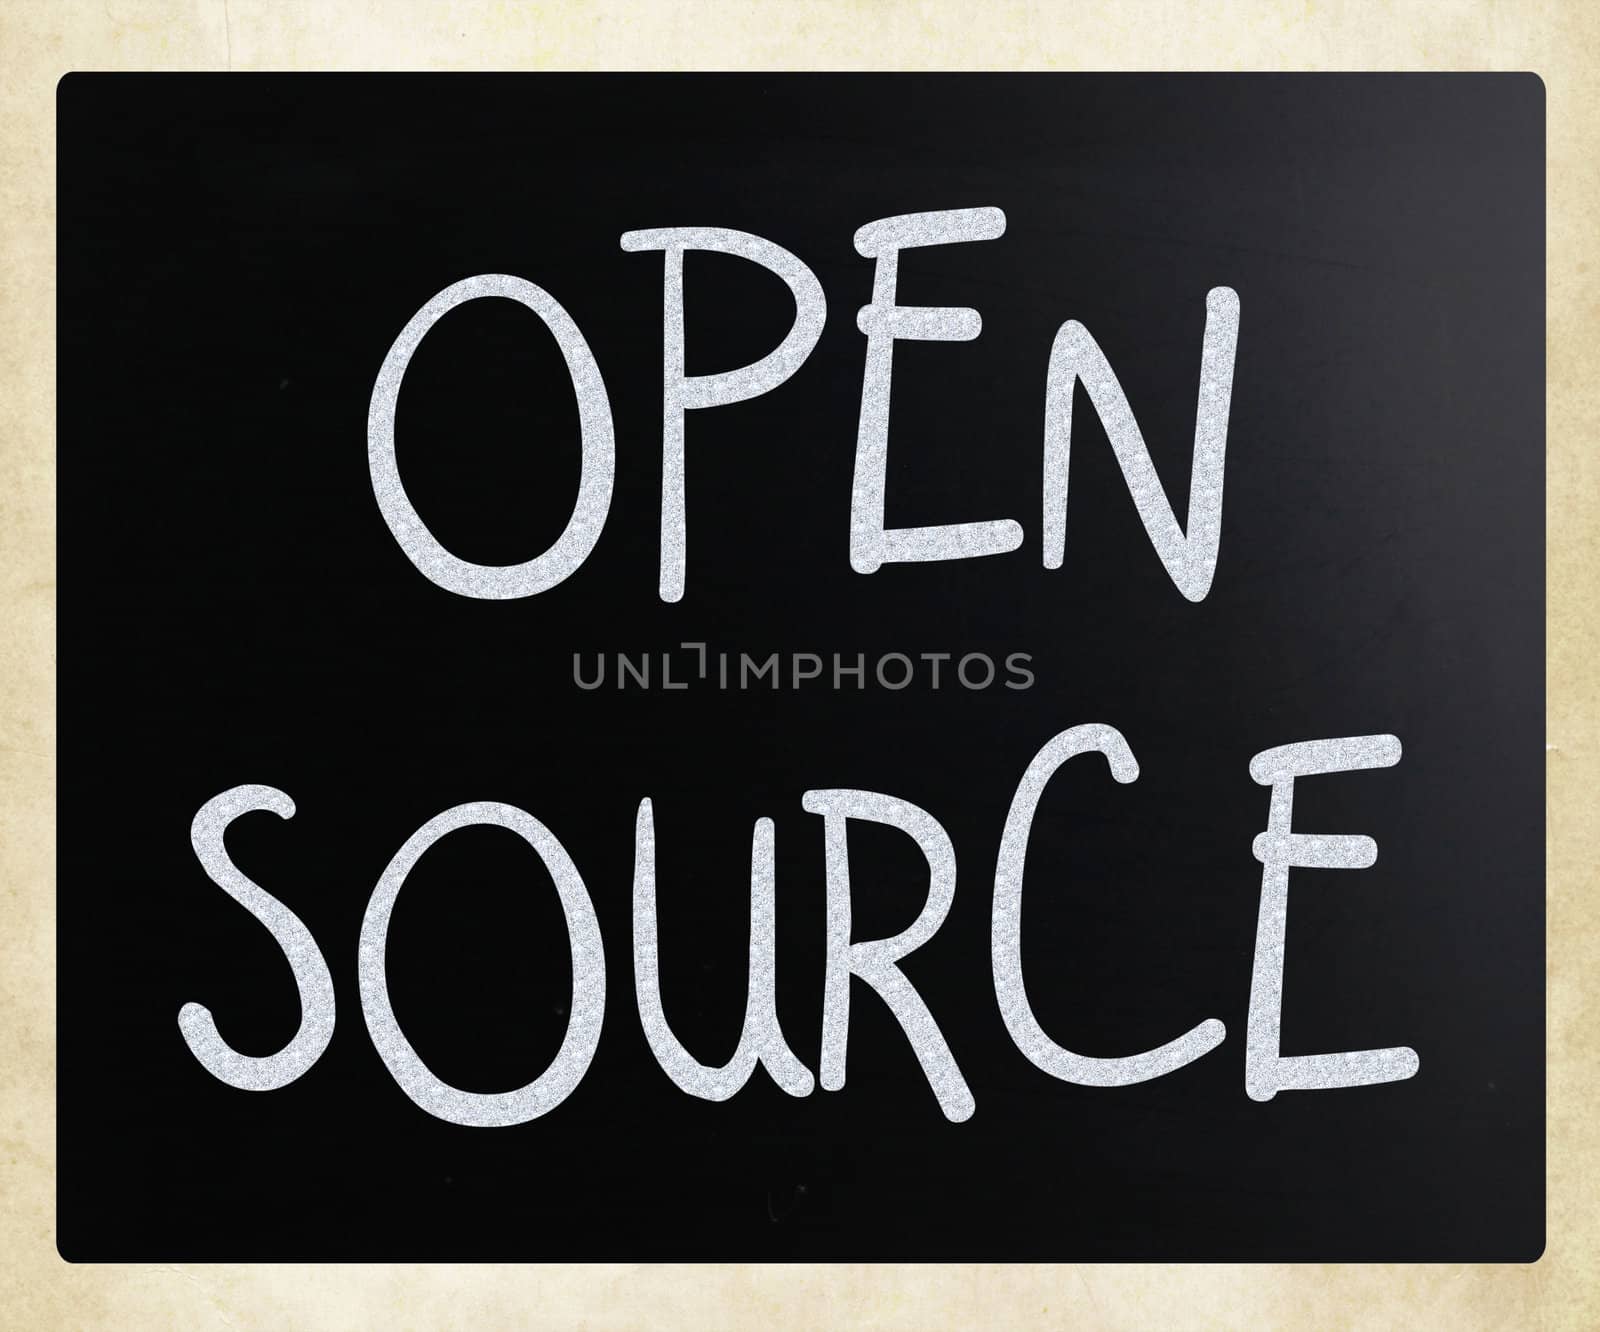 "Open source" handwritten with white chalk on a blackboard.